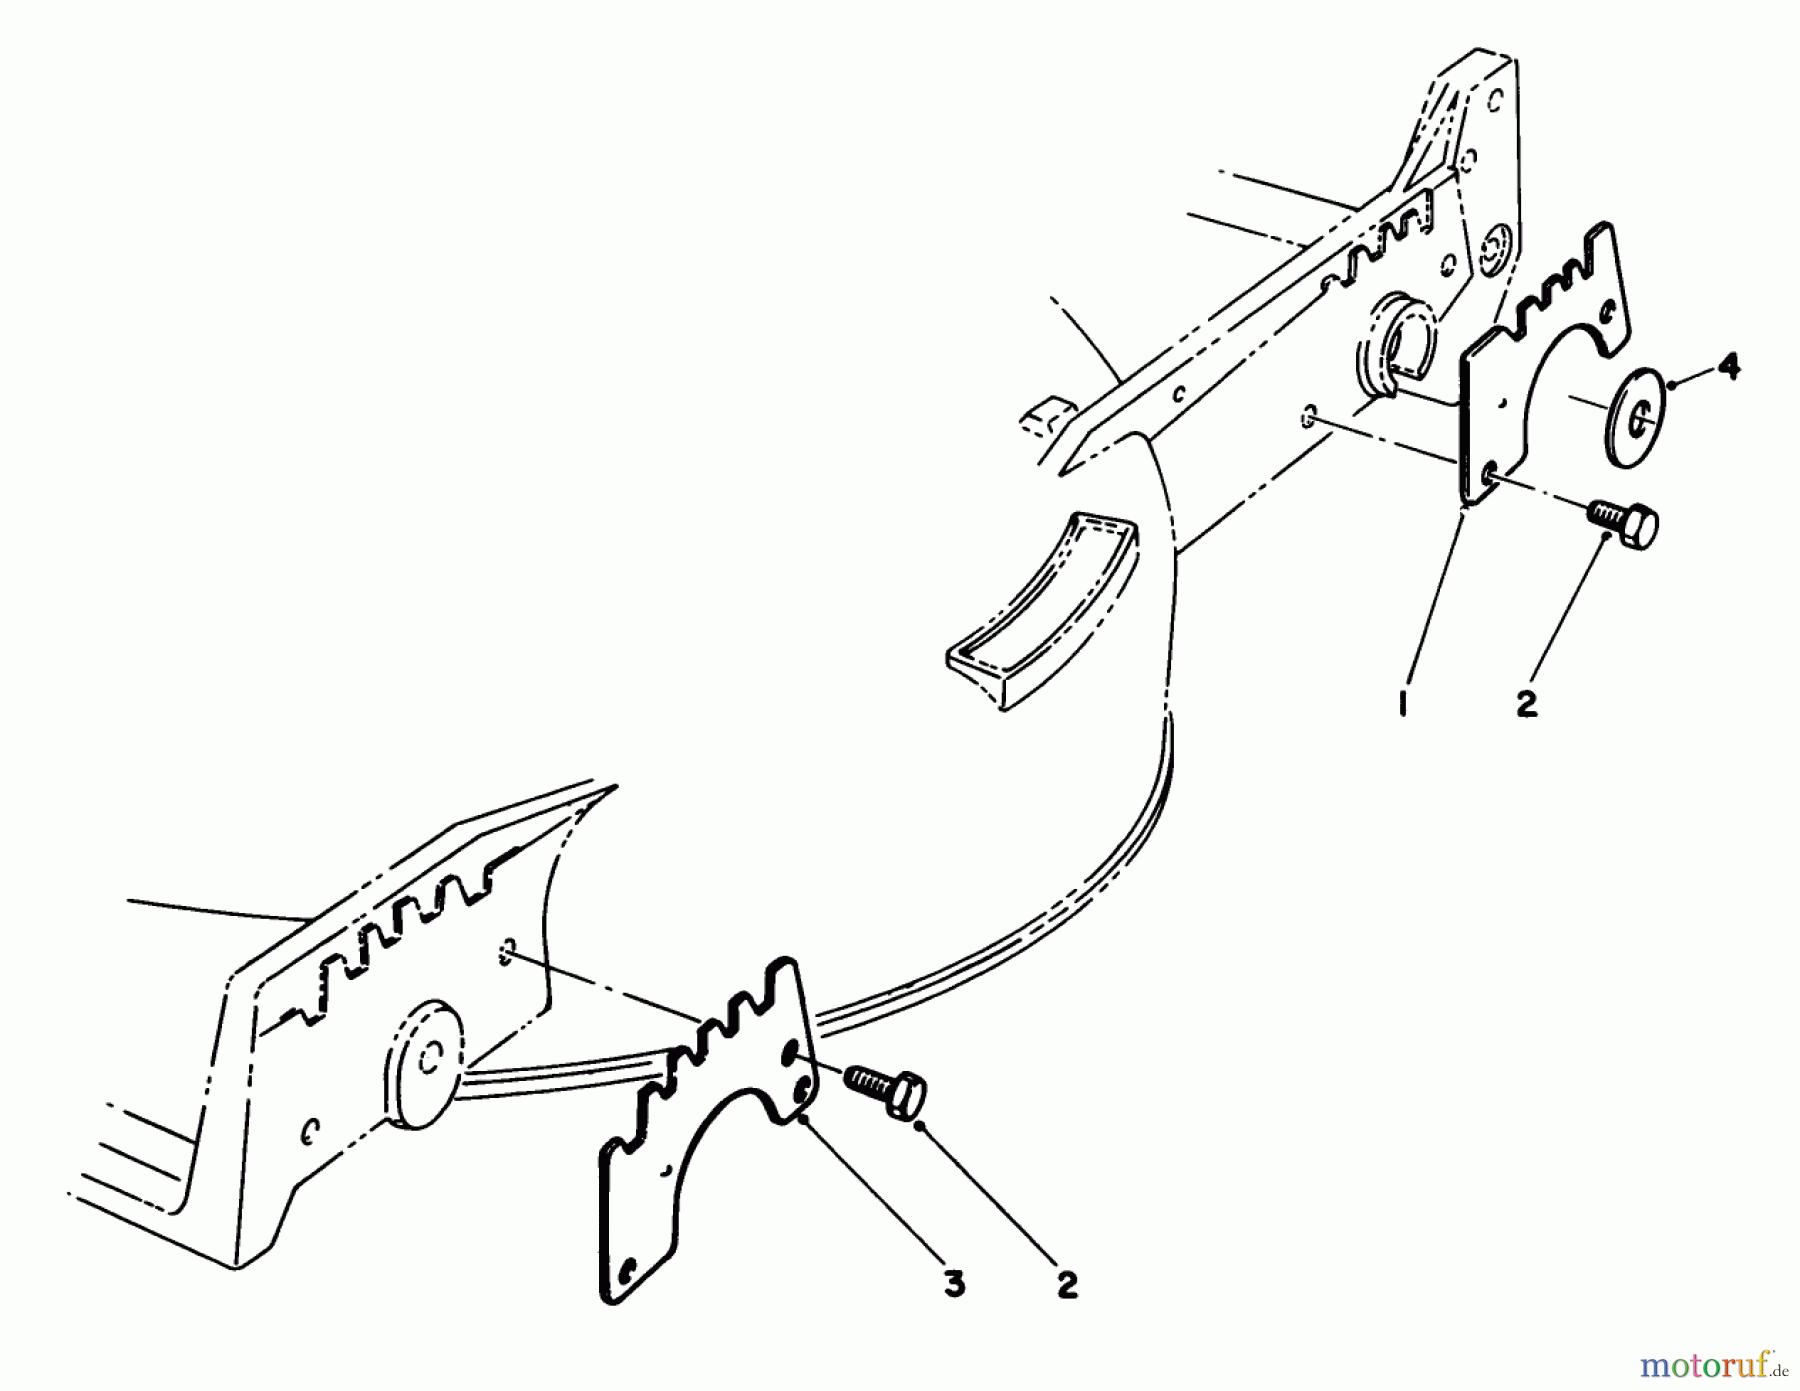  Toro Neu Mowers, Walk-Behind Seite 1 20588 - Toro Lawnmower, 1988 (8000001-8999999) WEAR PLATE KIT MODEL NO. 49-4080 (OPTIONAL)